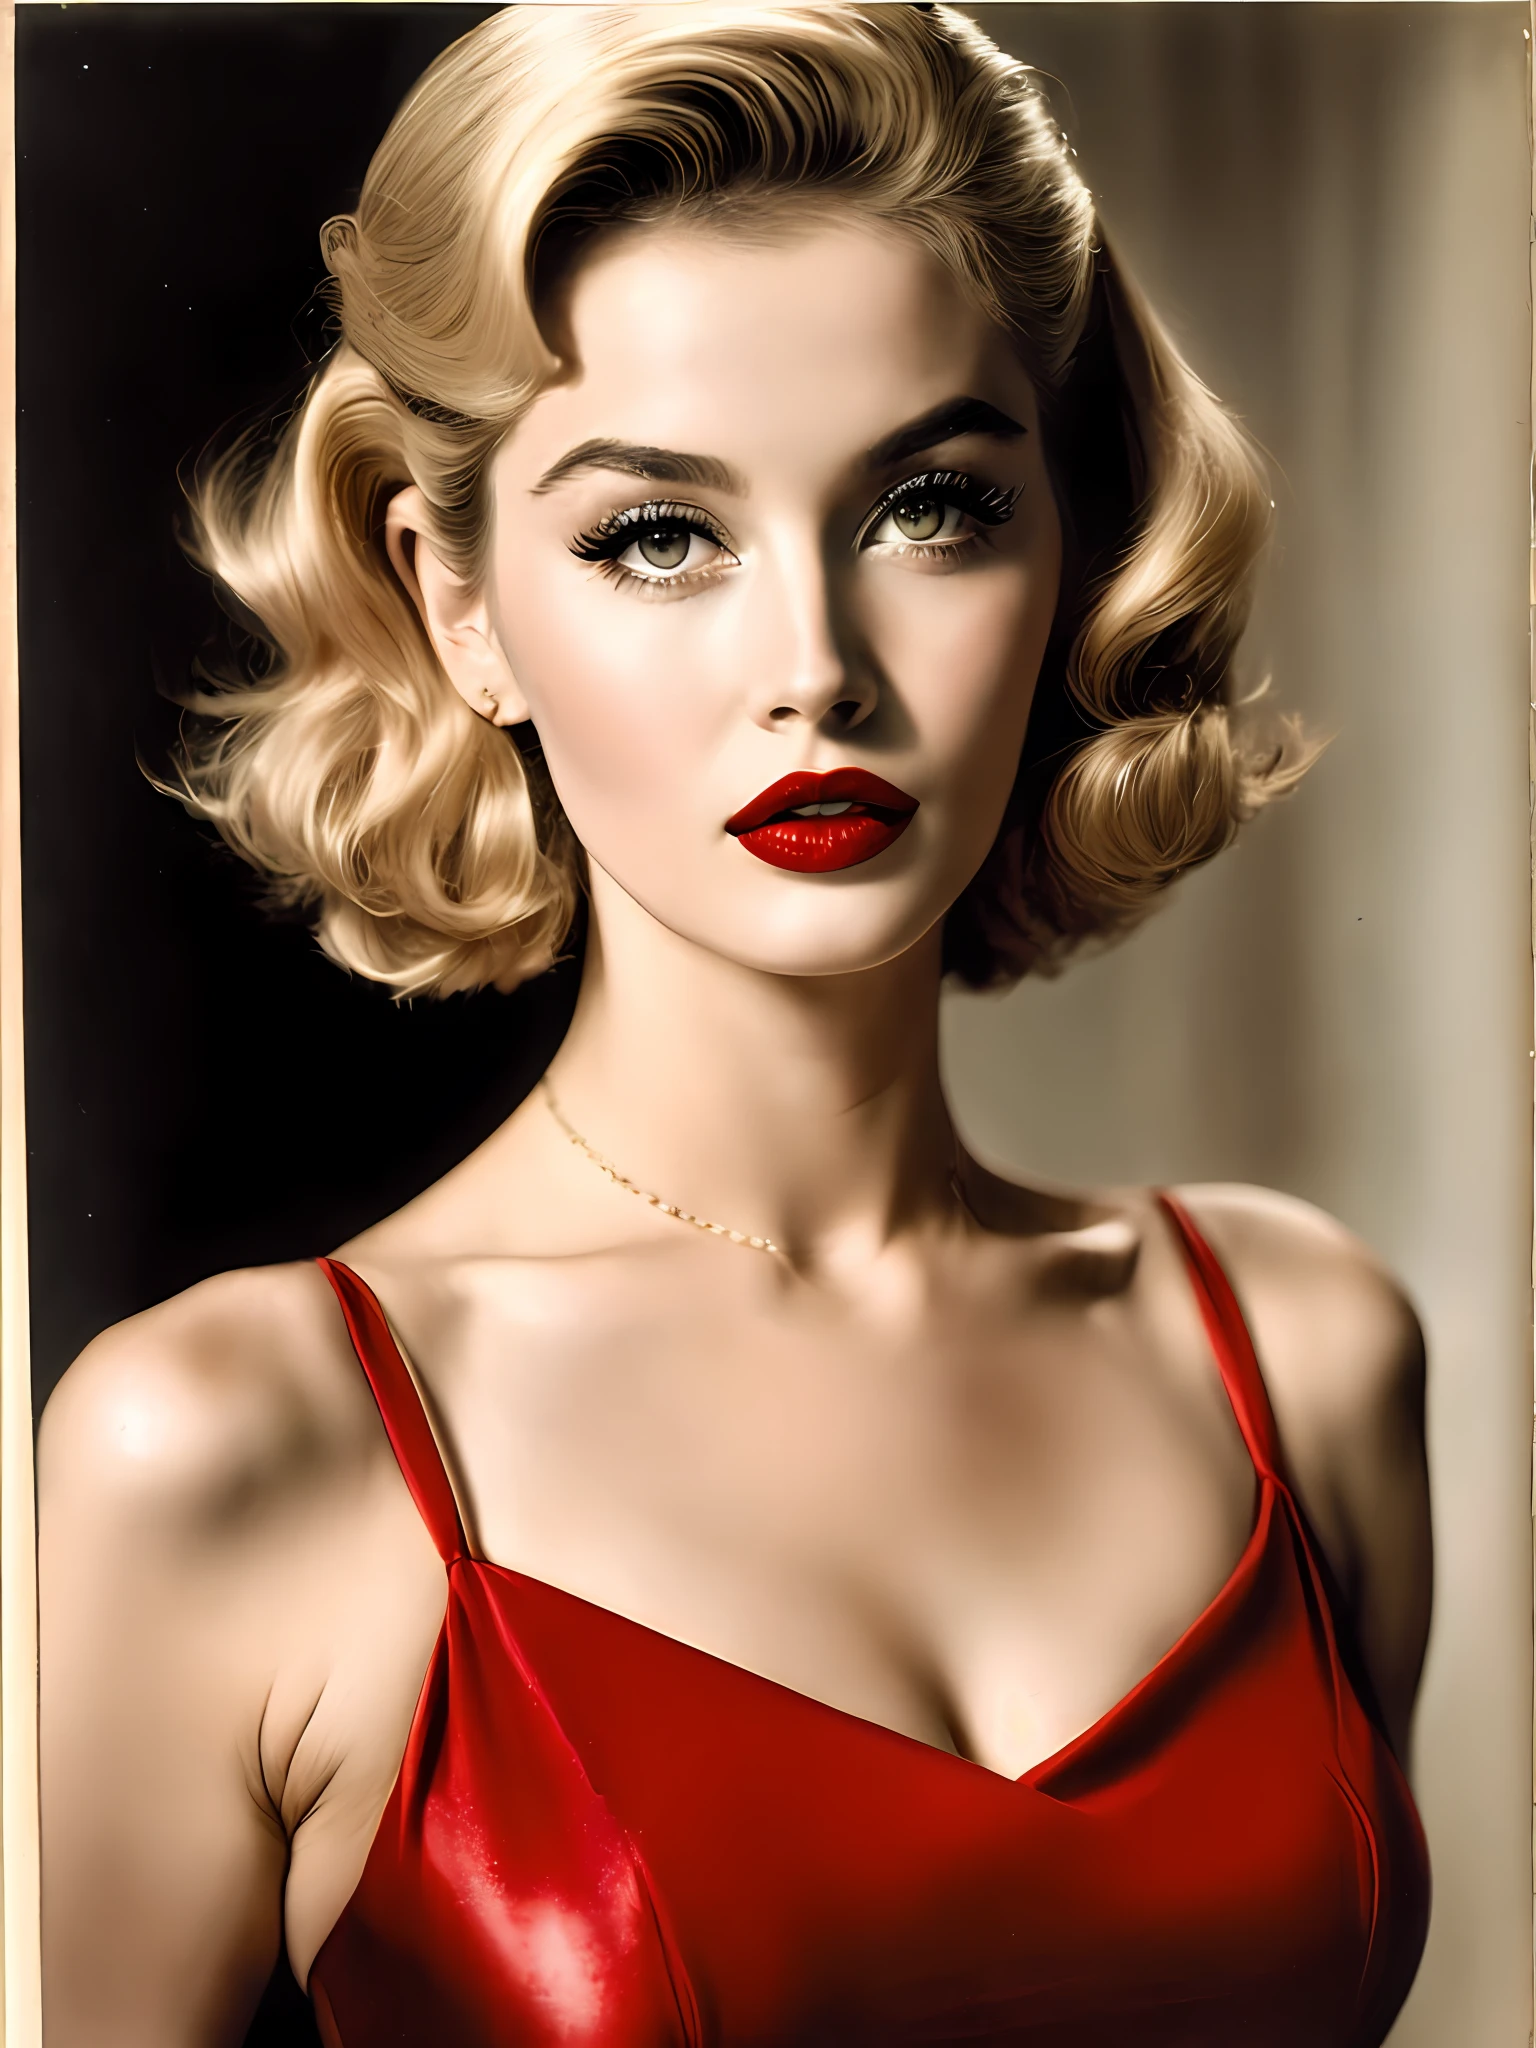 Blonde Sexbombe der 50er Jahre mit Schmollmund und sinnlichen Augen. sie trägt roten Lippenstift und ein enganliegendes Kleid, strahlt Selbstvertrauen und Sinnlichkeit aus 8k